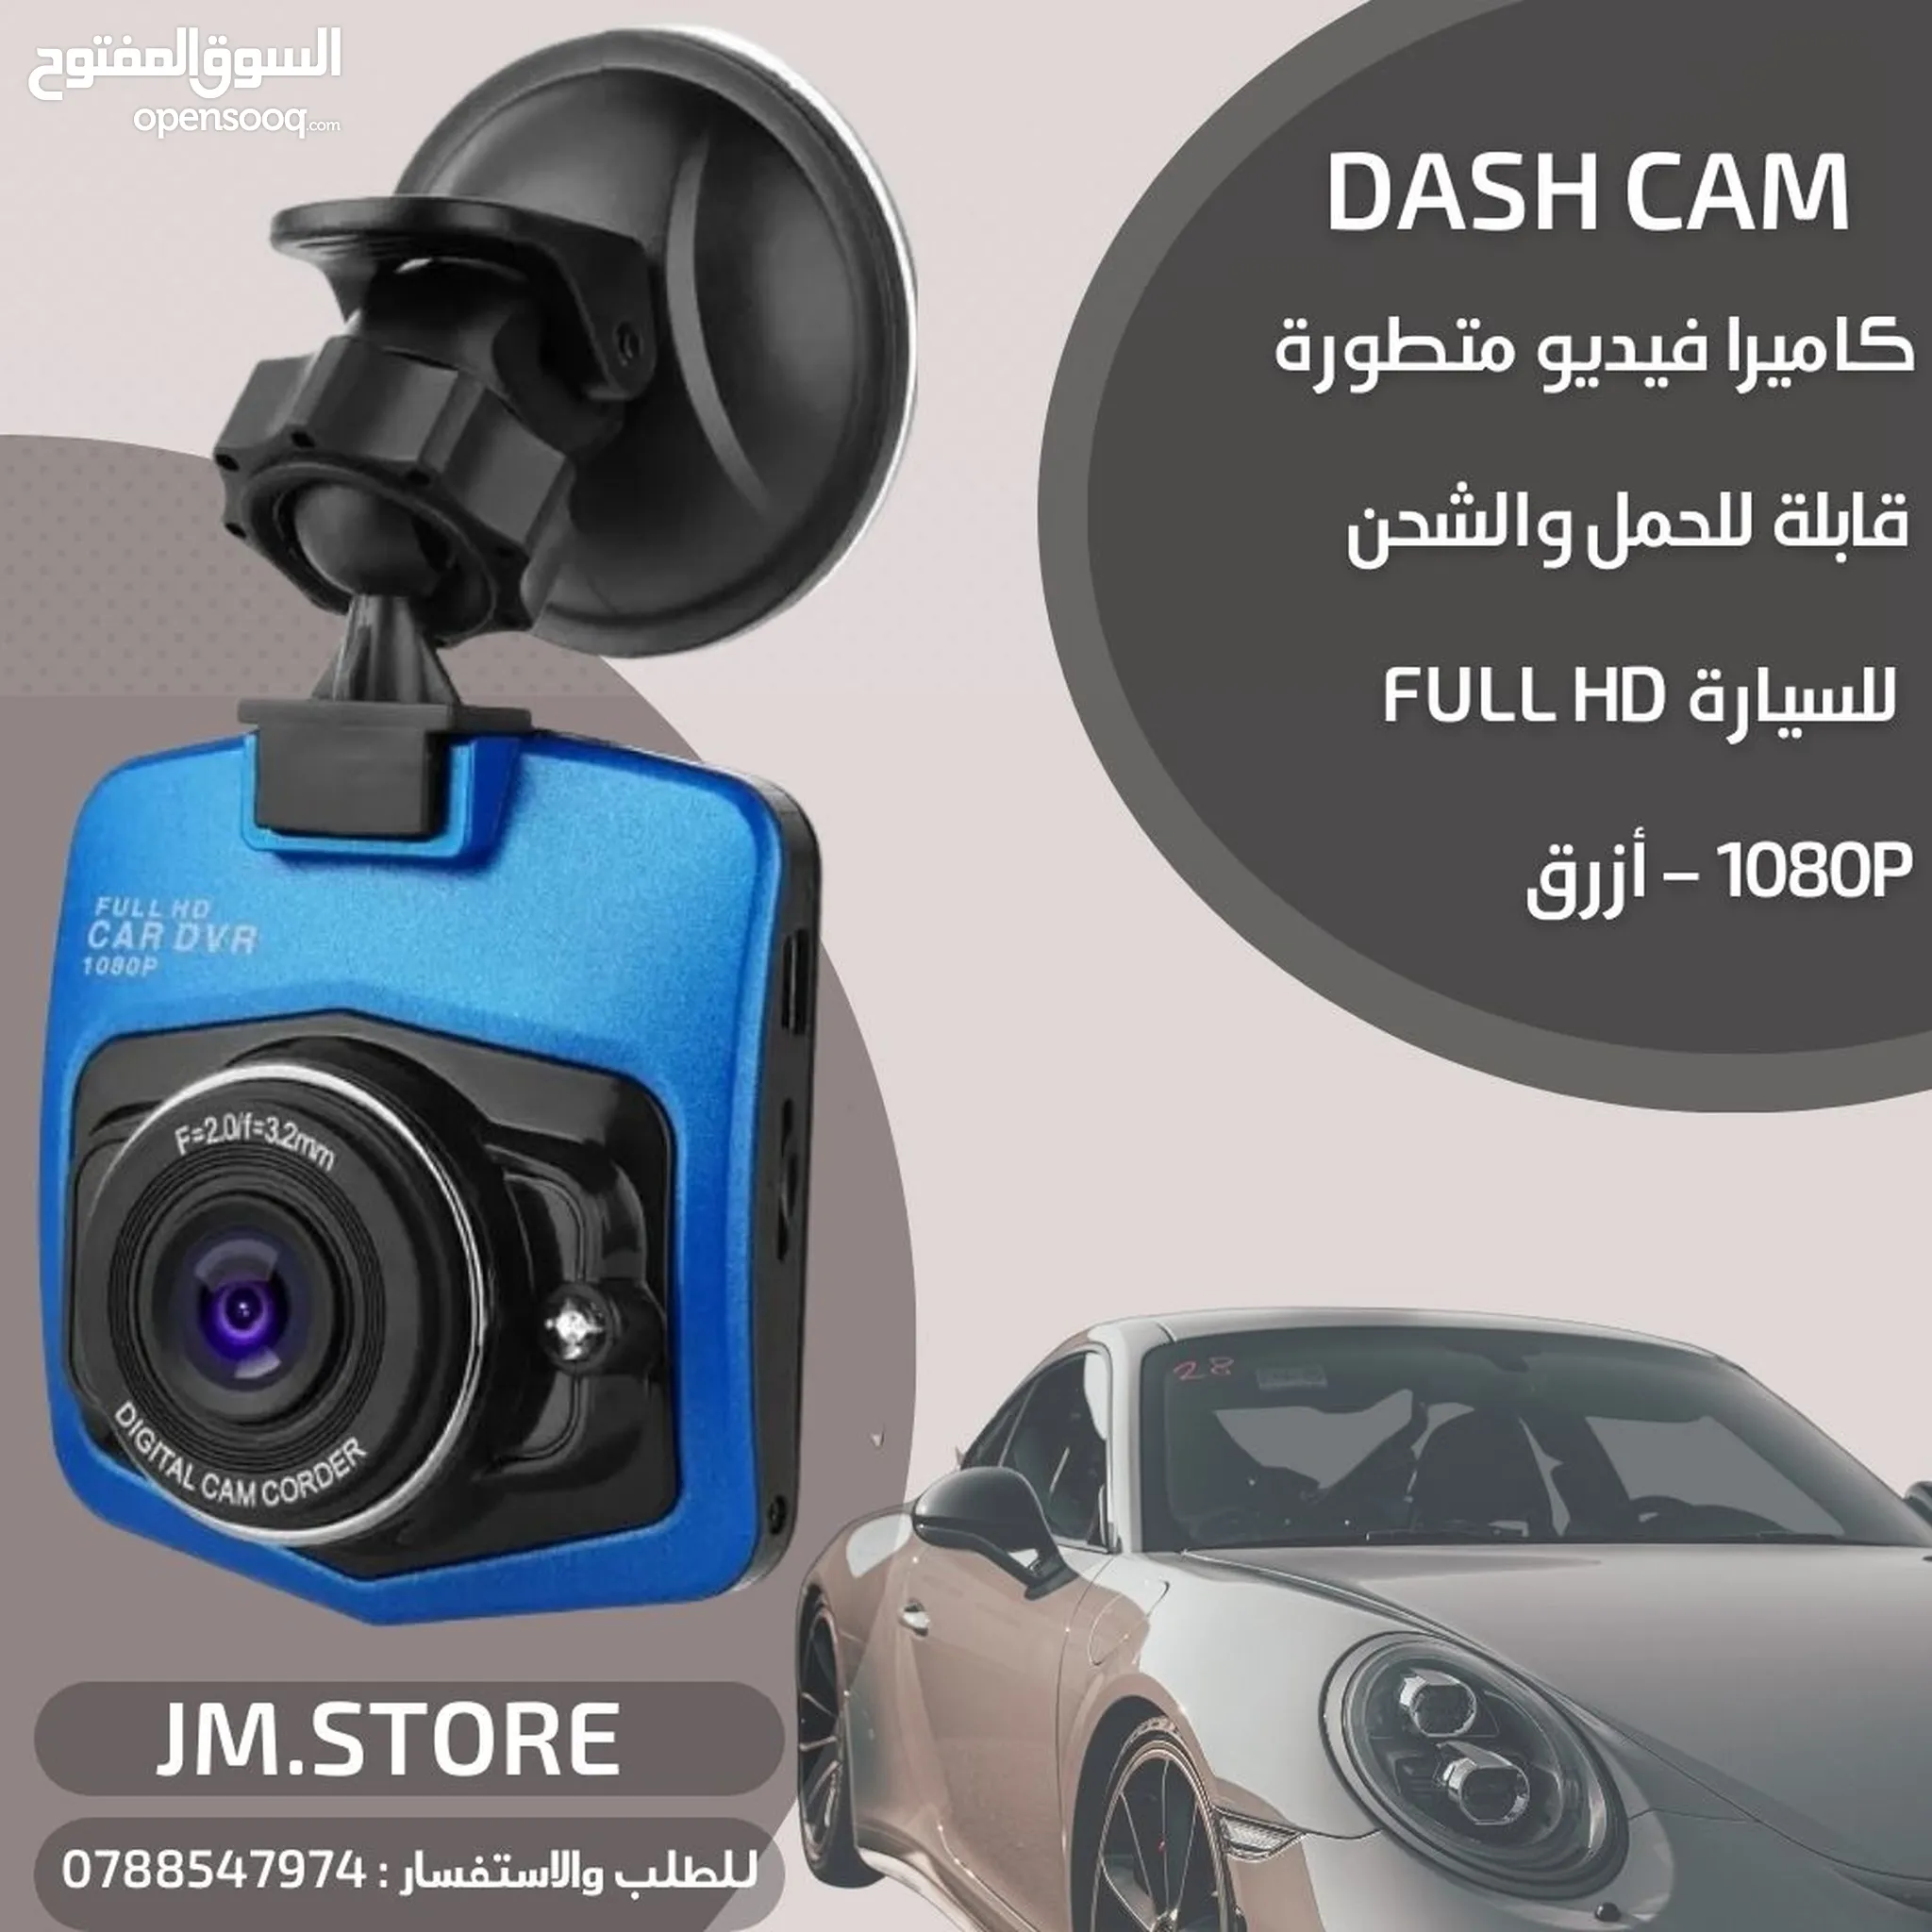 كاميرات وحساسات سيارات للبيع في الأردن : افضل الاسعار | السوق المفتوح